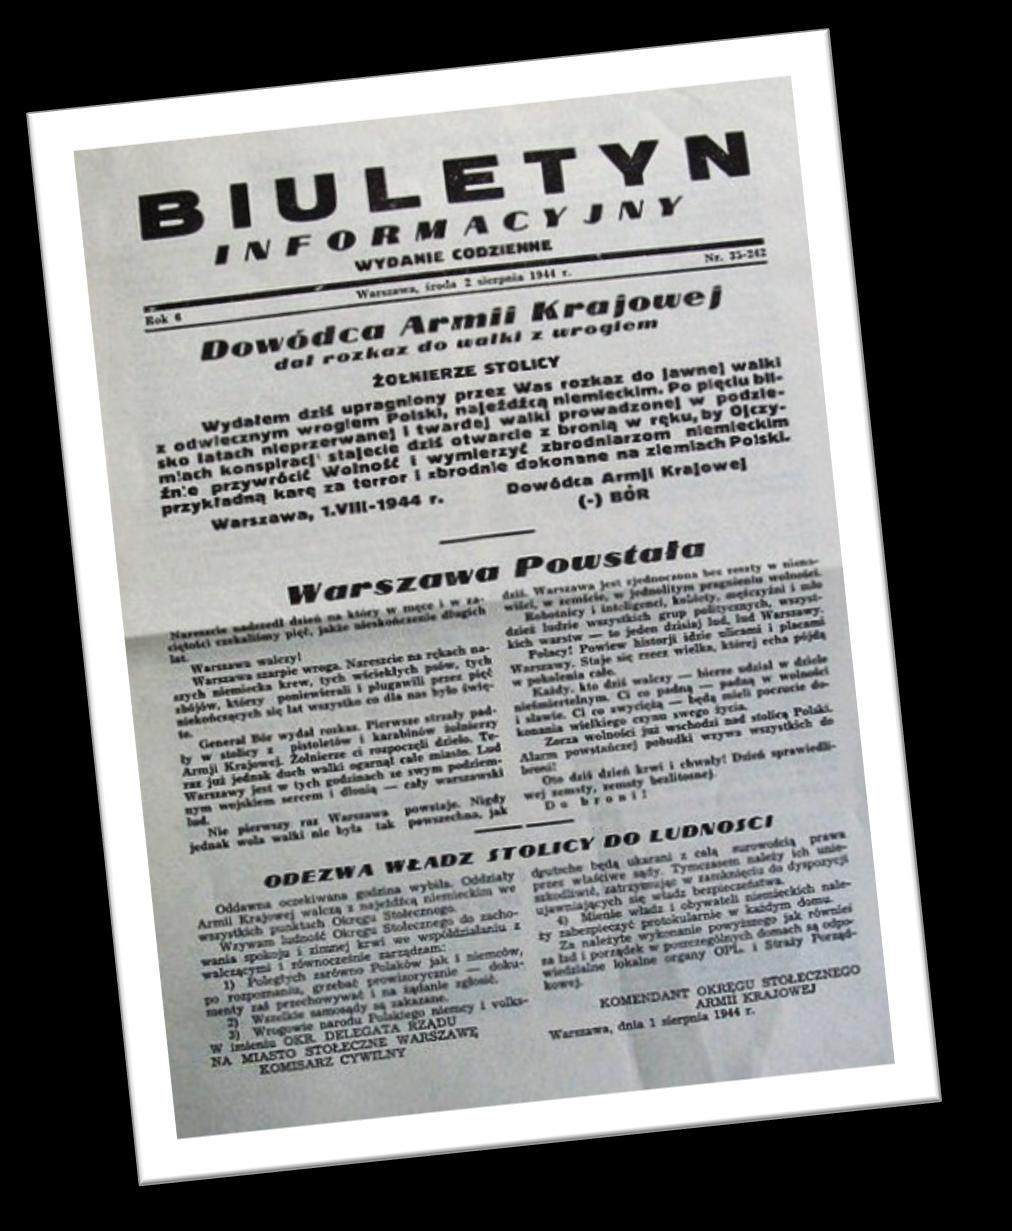 Biuletyn informacyjny Biuletyn Informacyjny to konspiracyjne czasopismo, ukazujące się jako tygodnik w Warszawie podczas